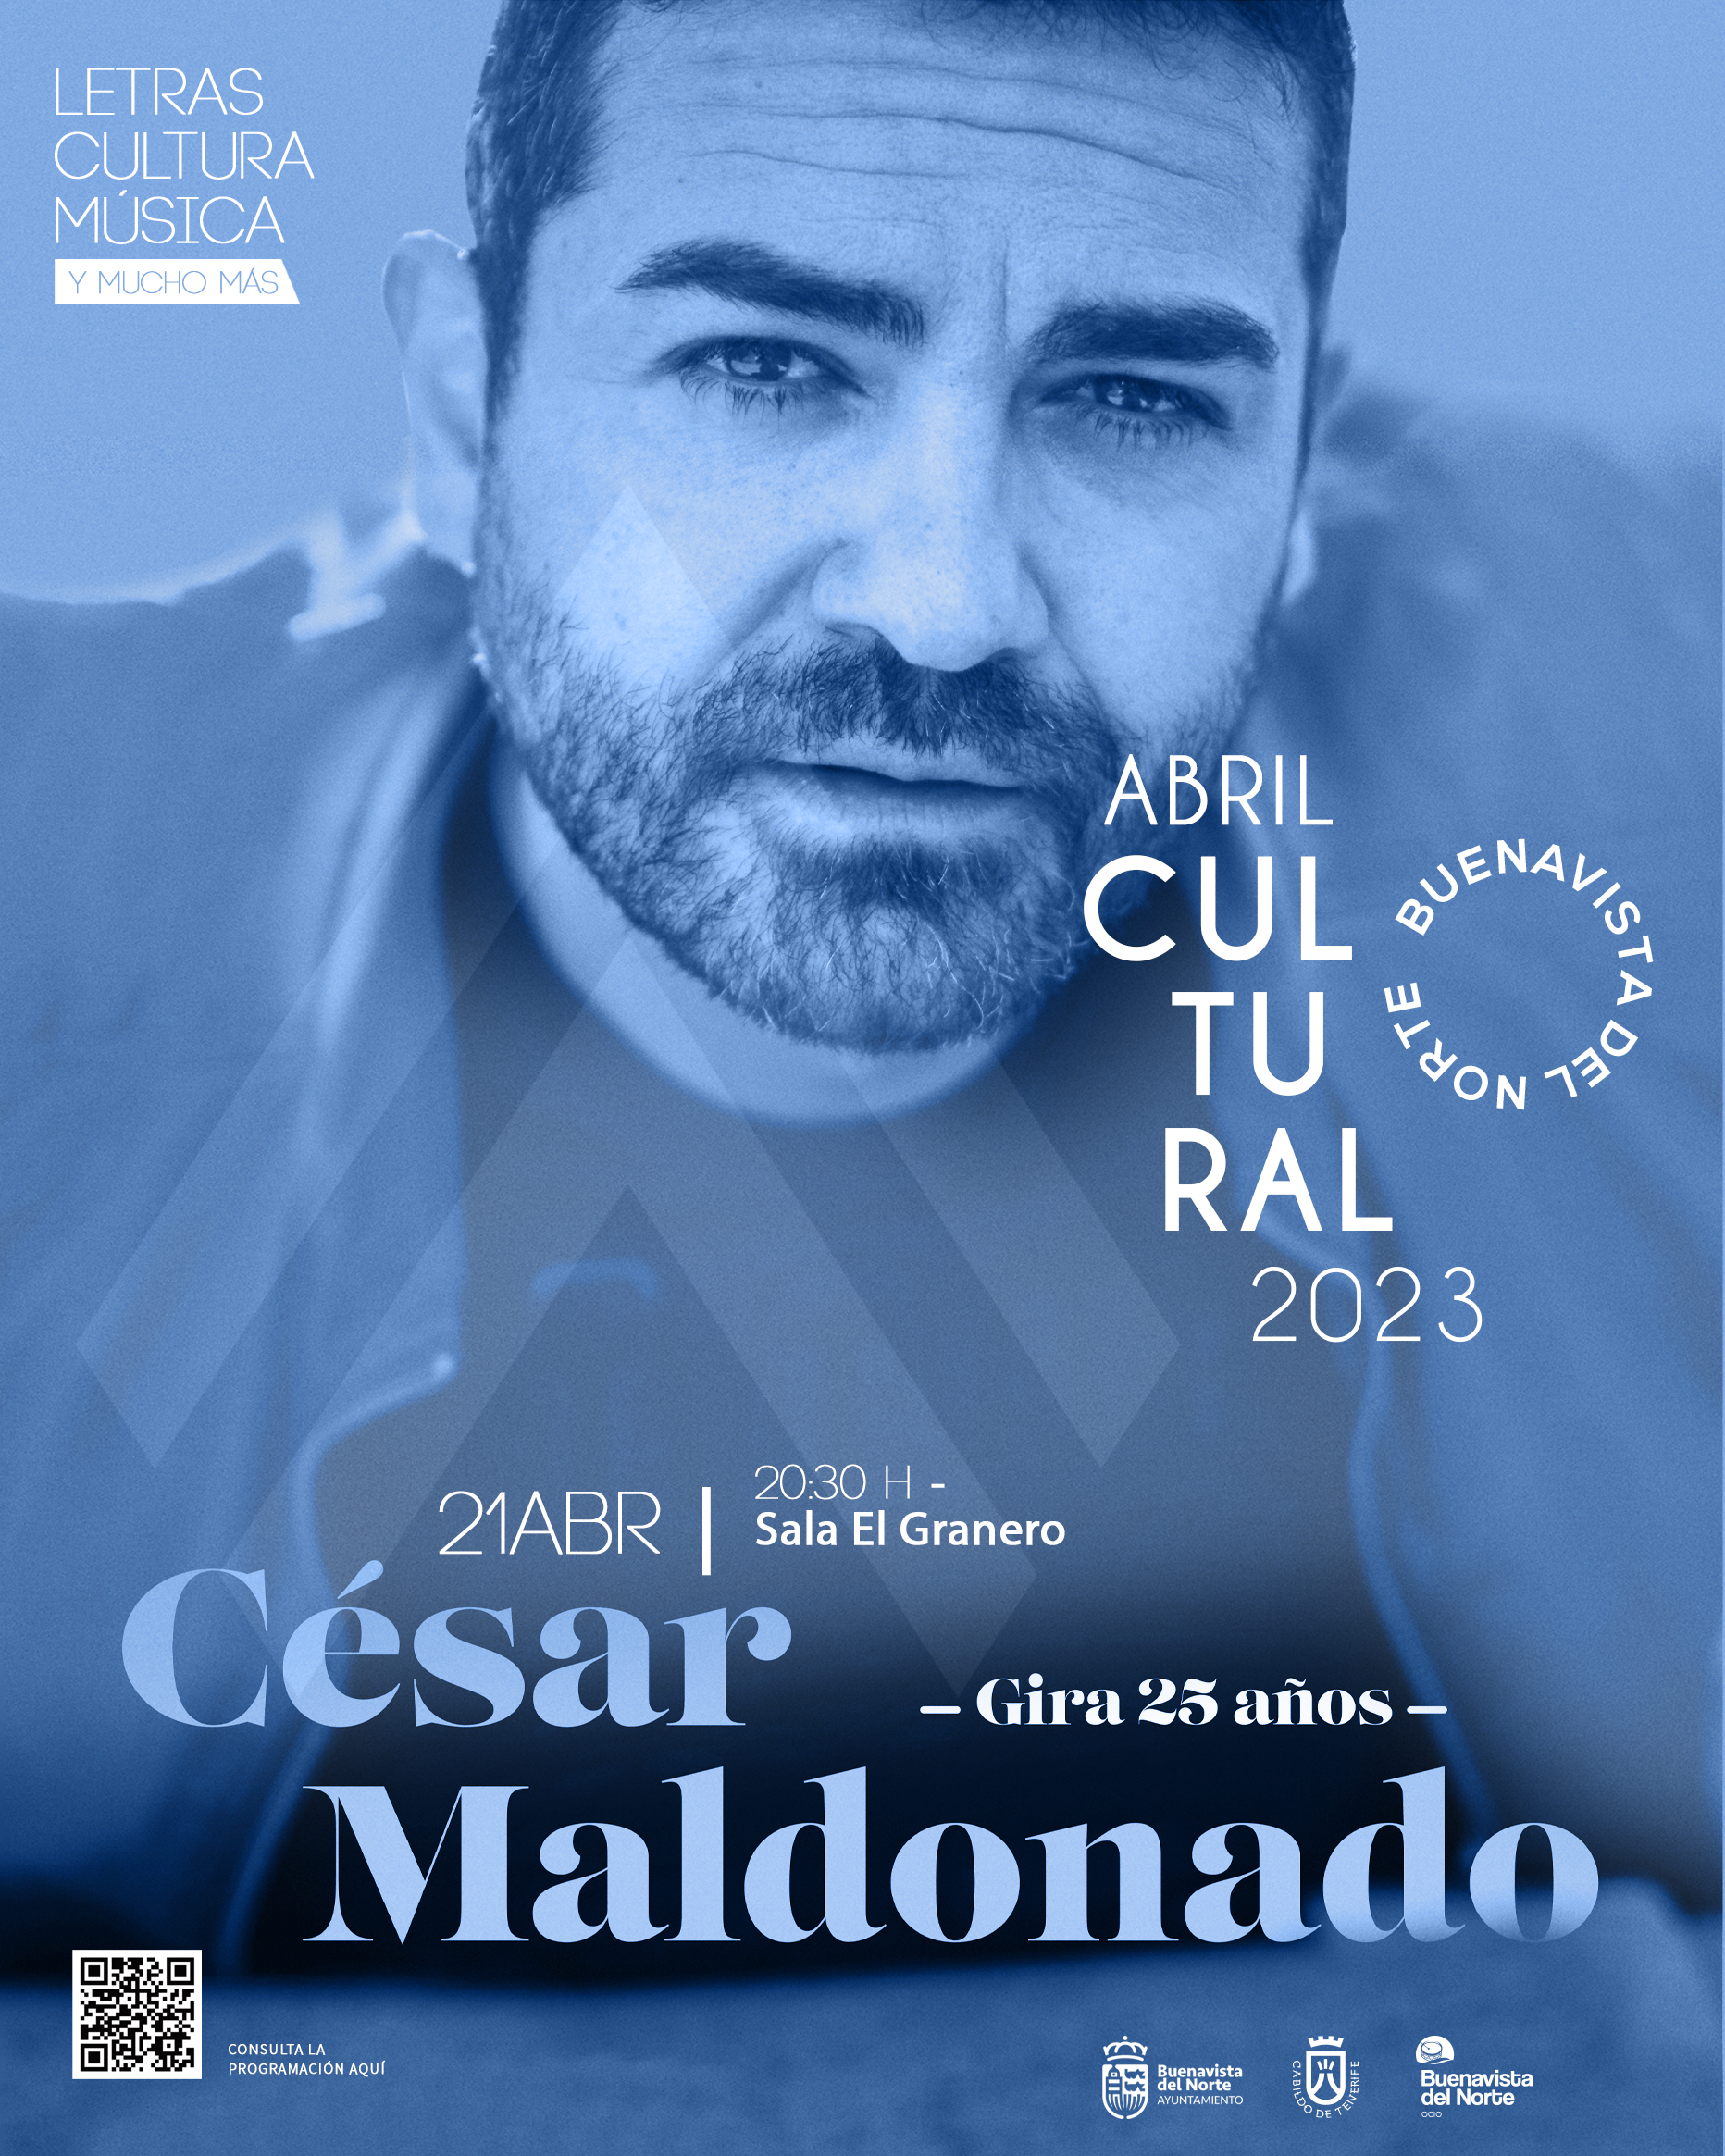 César Maldonado